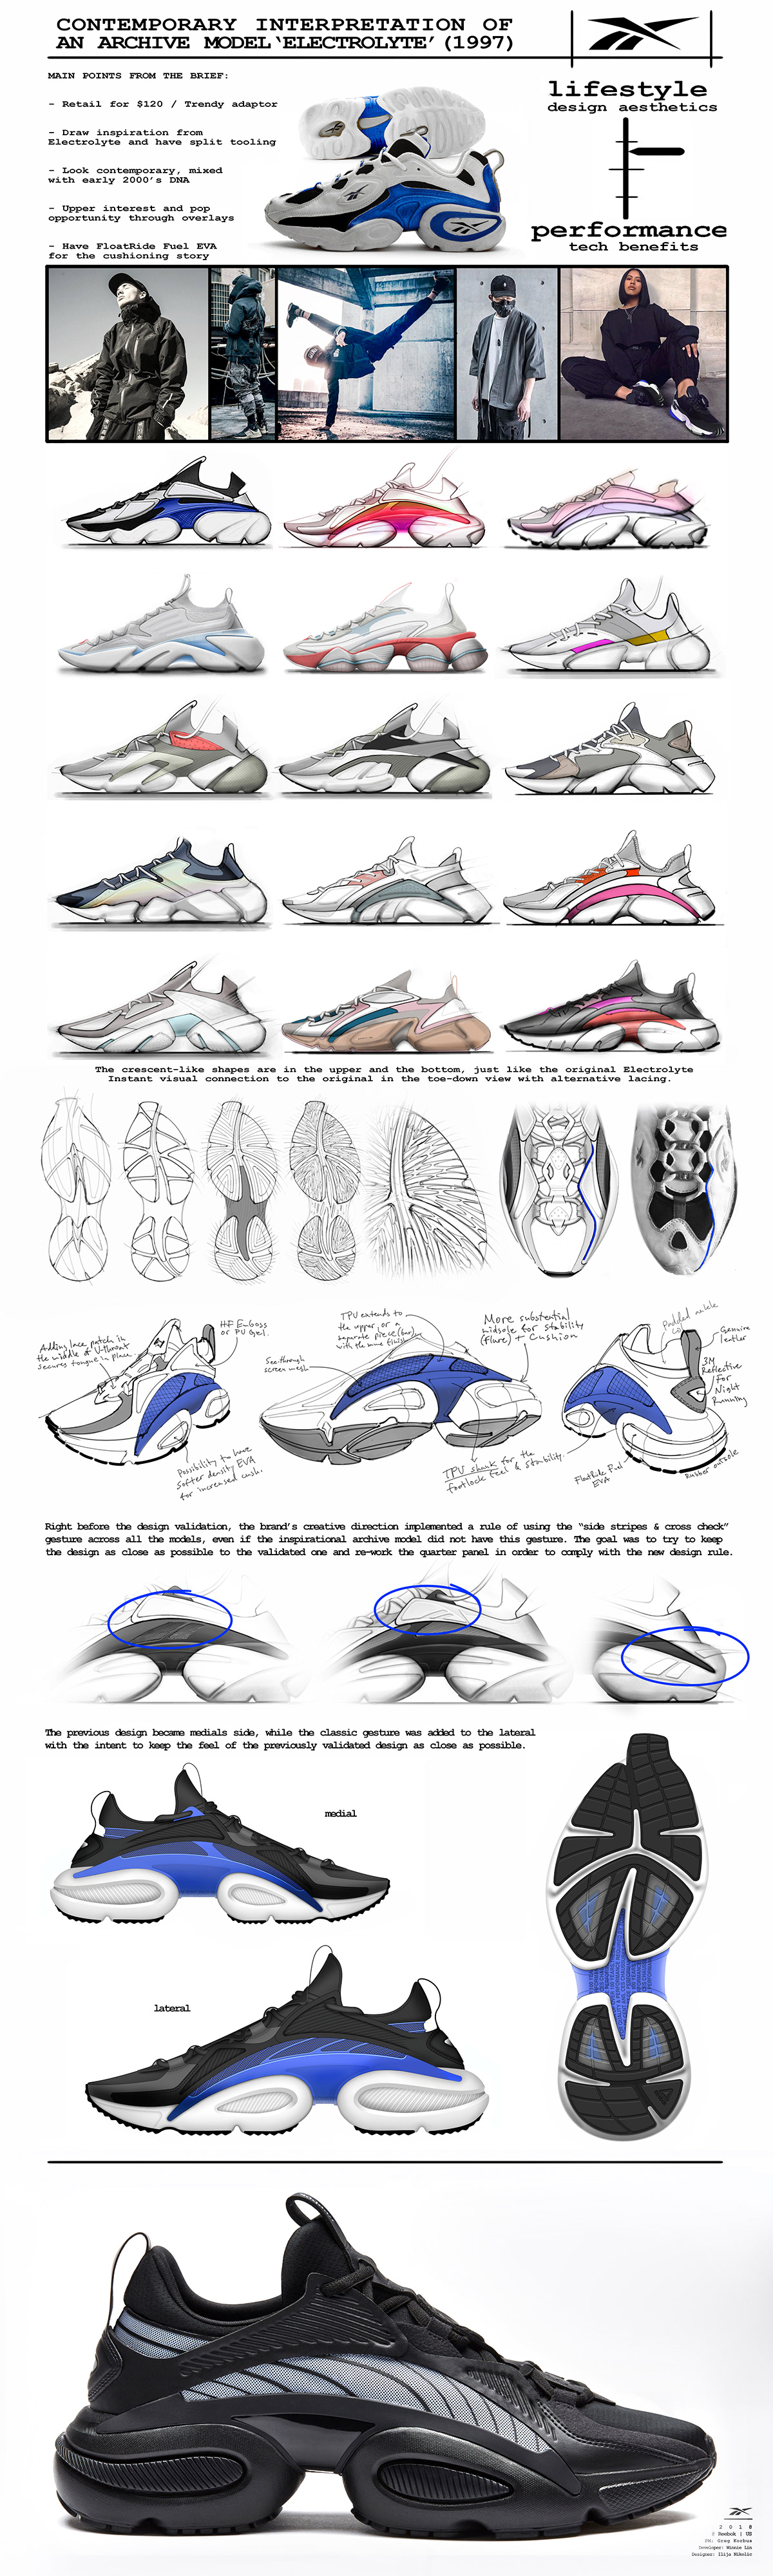 reebok electrolyte adidas Nike yeezy YZY sneakers footwear sketches product